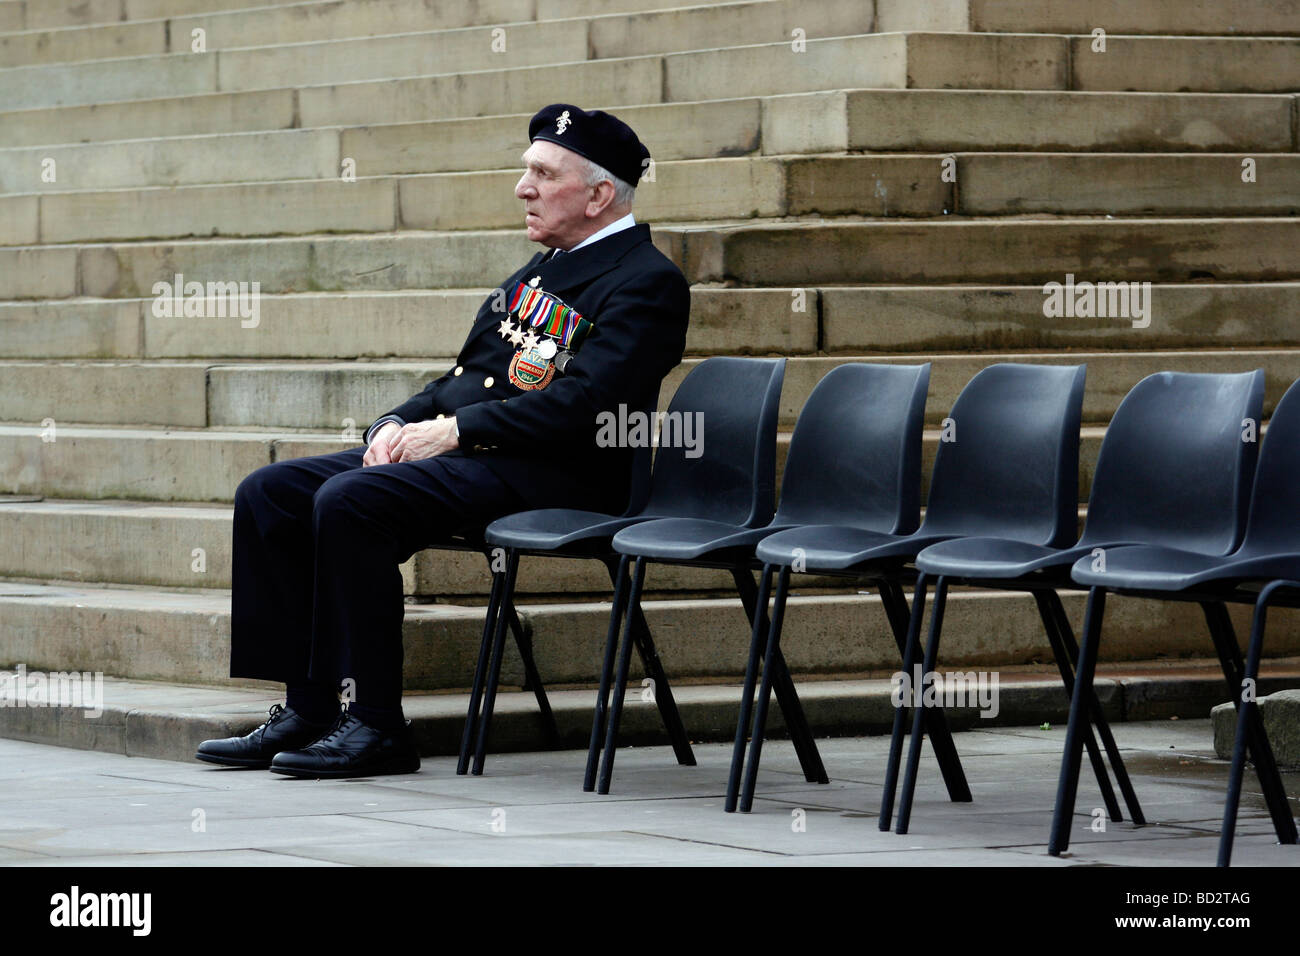 Il veterano della Normandia nel profondo del pensiero in un Giorno del Ricordo Servizio in Inghilterra UK. fotografia DON TONGE Foto Stock